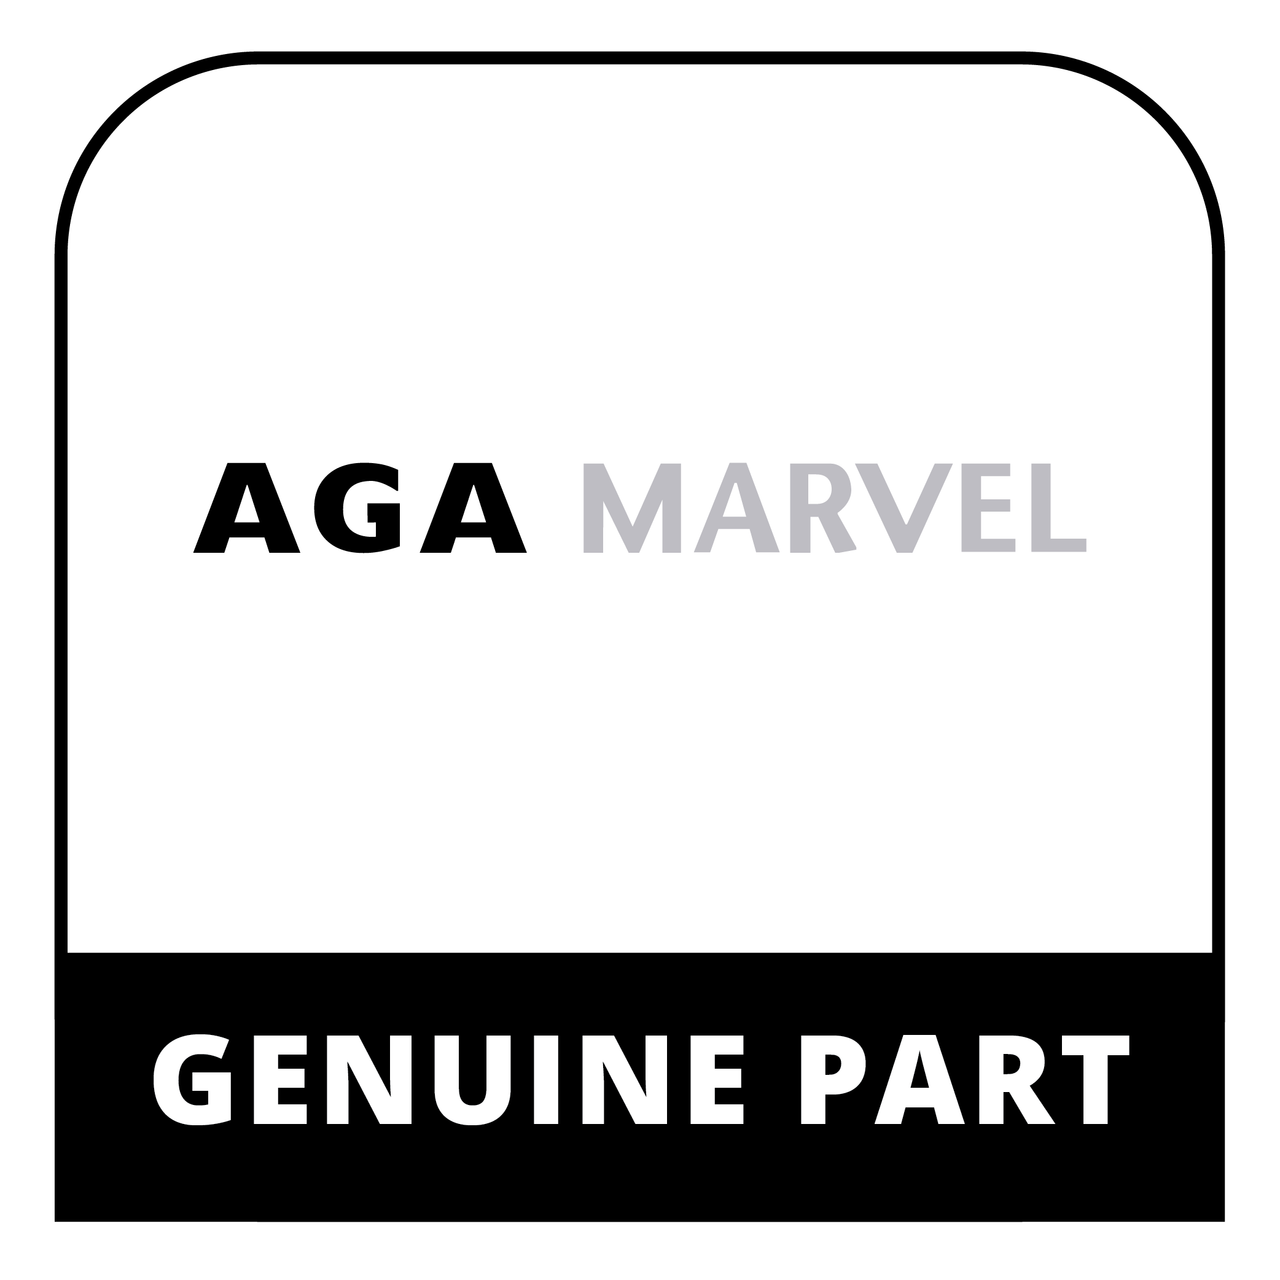 AGA Marvel A2983-HEA - Rh Side Plate - Aga Oil & Gas Ckrs - Genuine AGA Marvel Part